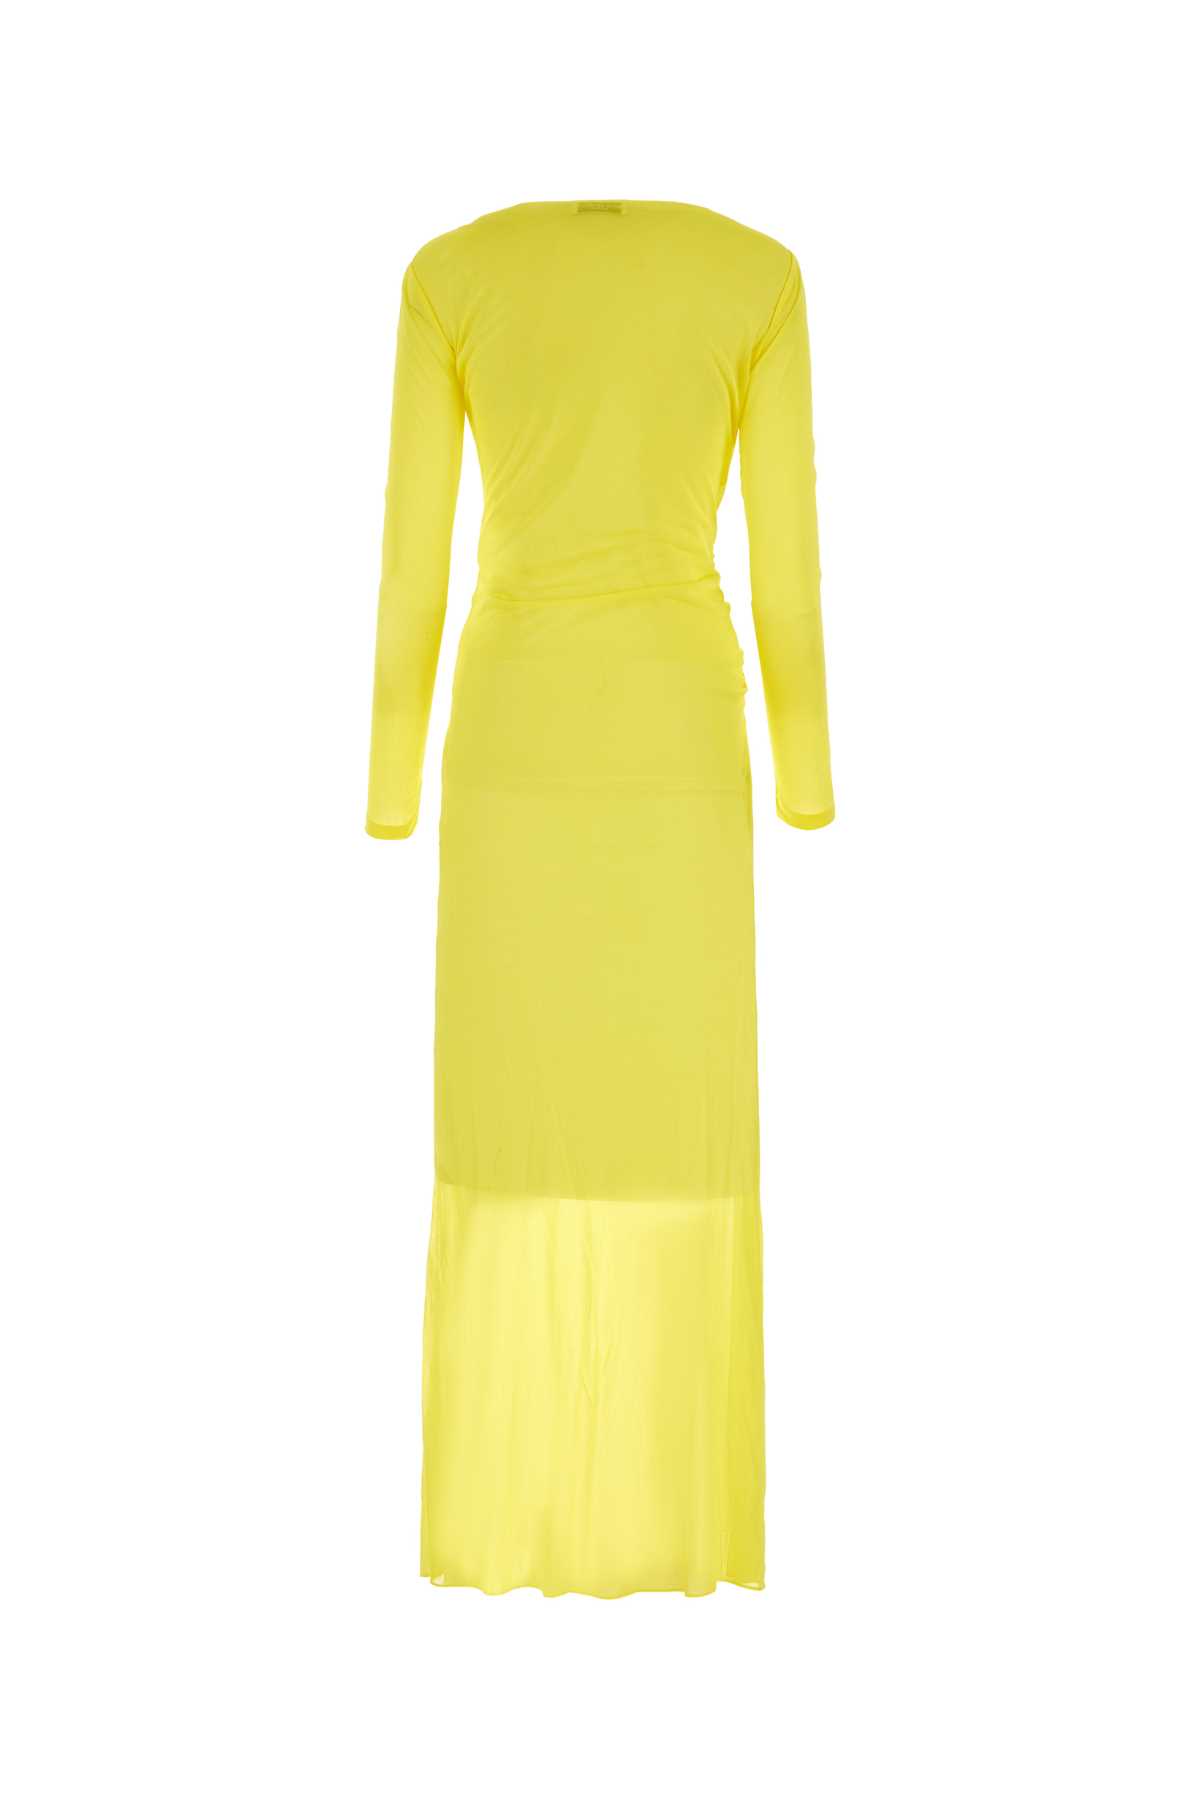 Shop Saint Laurent Yellow Crepe Long Dress